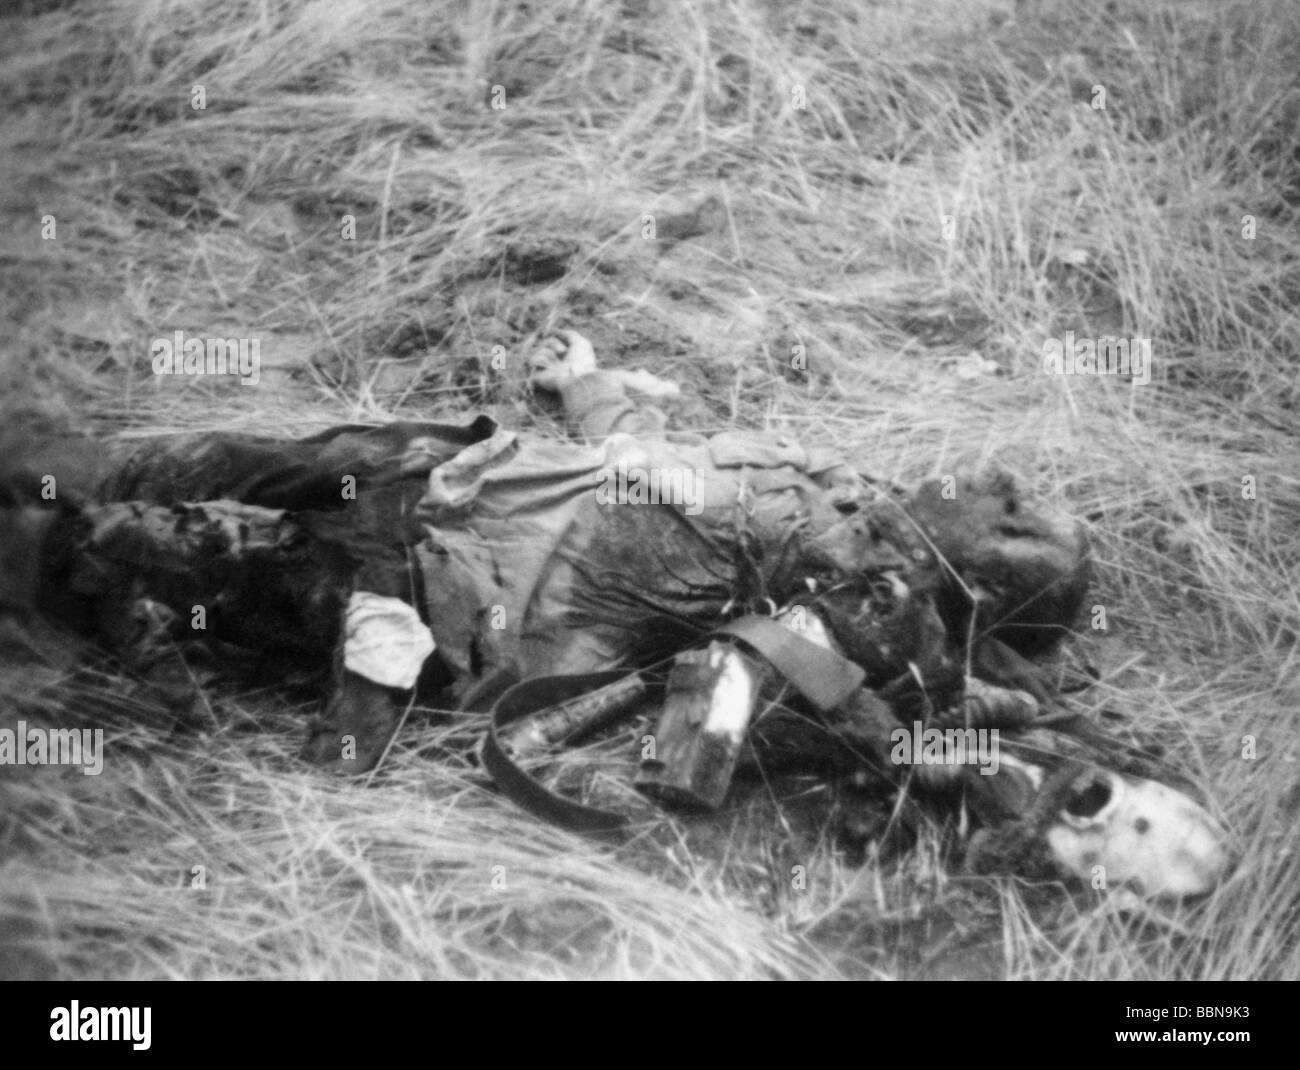 Événements, seconde Guerre mondiale / seconde Guerre mondiale, Russie, soldats tombés / corps morts, soldat soviétique déchu, juillet 1941, Banque D'Images